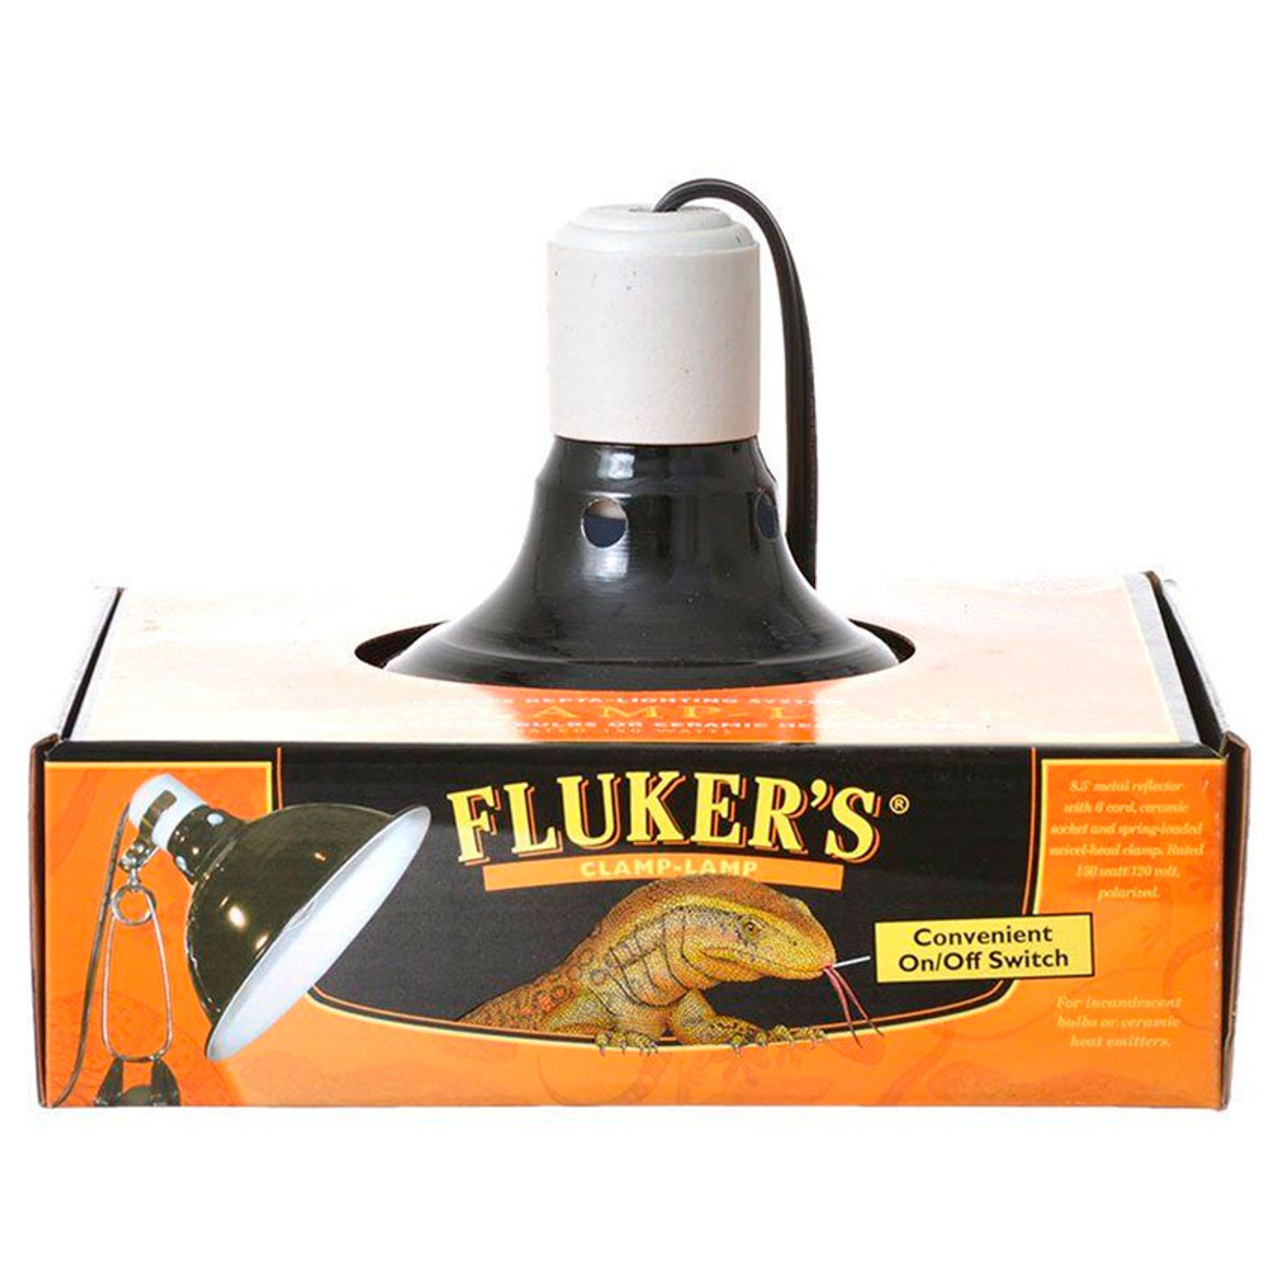 Fluker's Clamp Lamp Domes